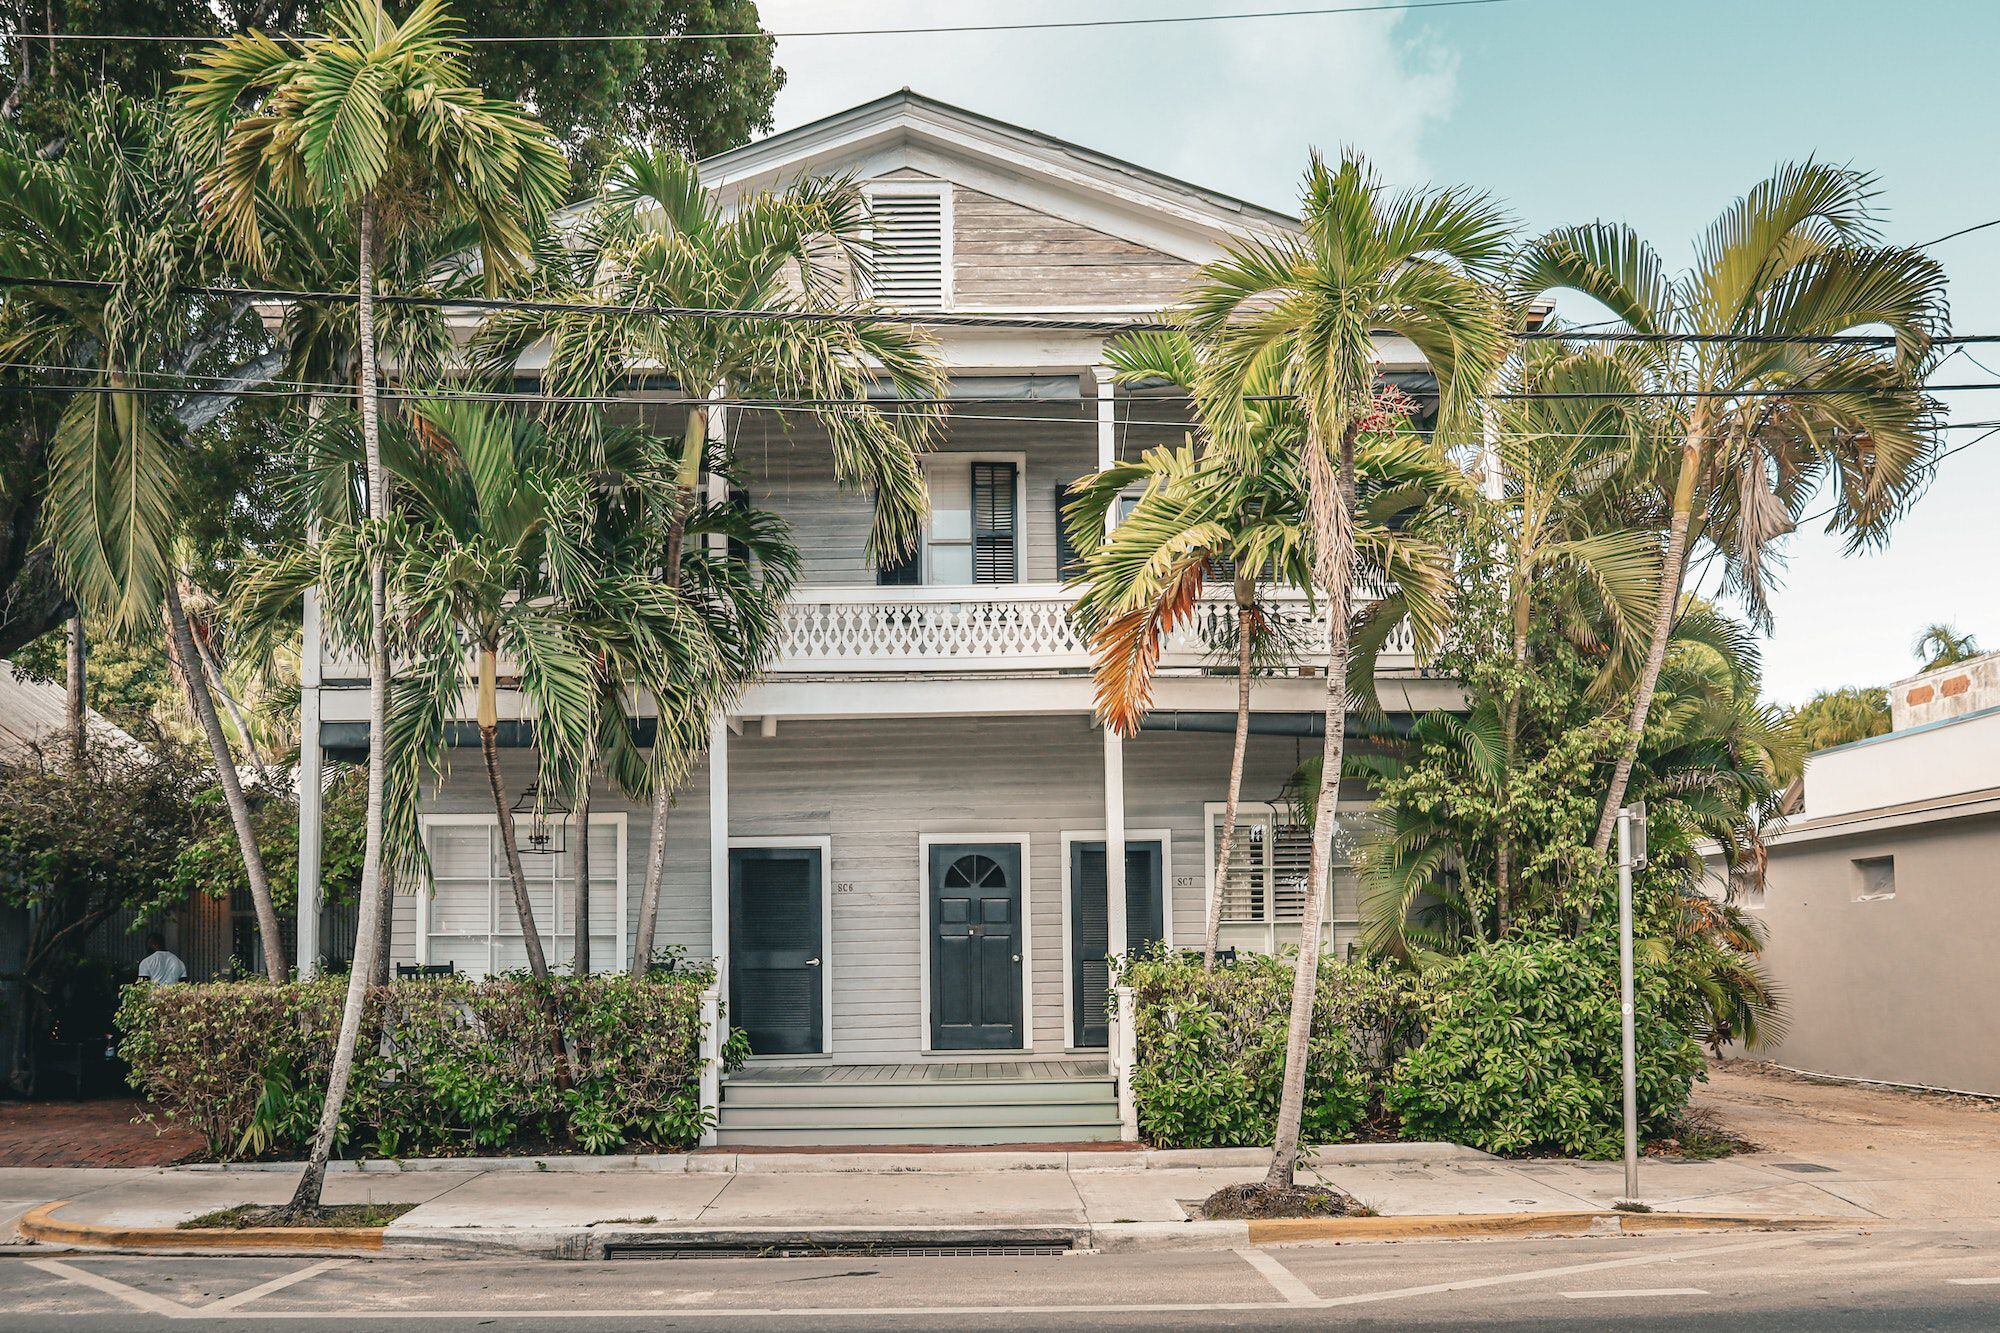 Buen precio, oferta variada y acceso a hipotecas: cuáles son las mejores dos zonas de Florida para comprar una casa